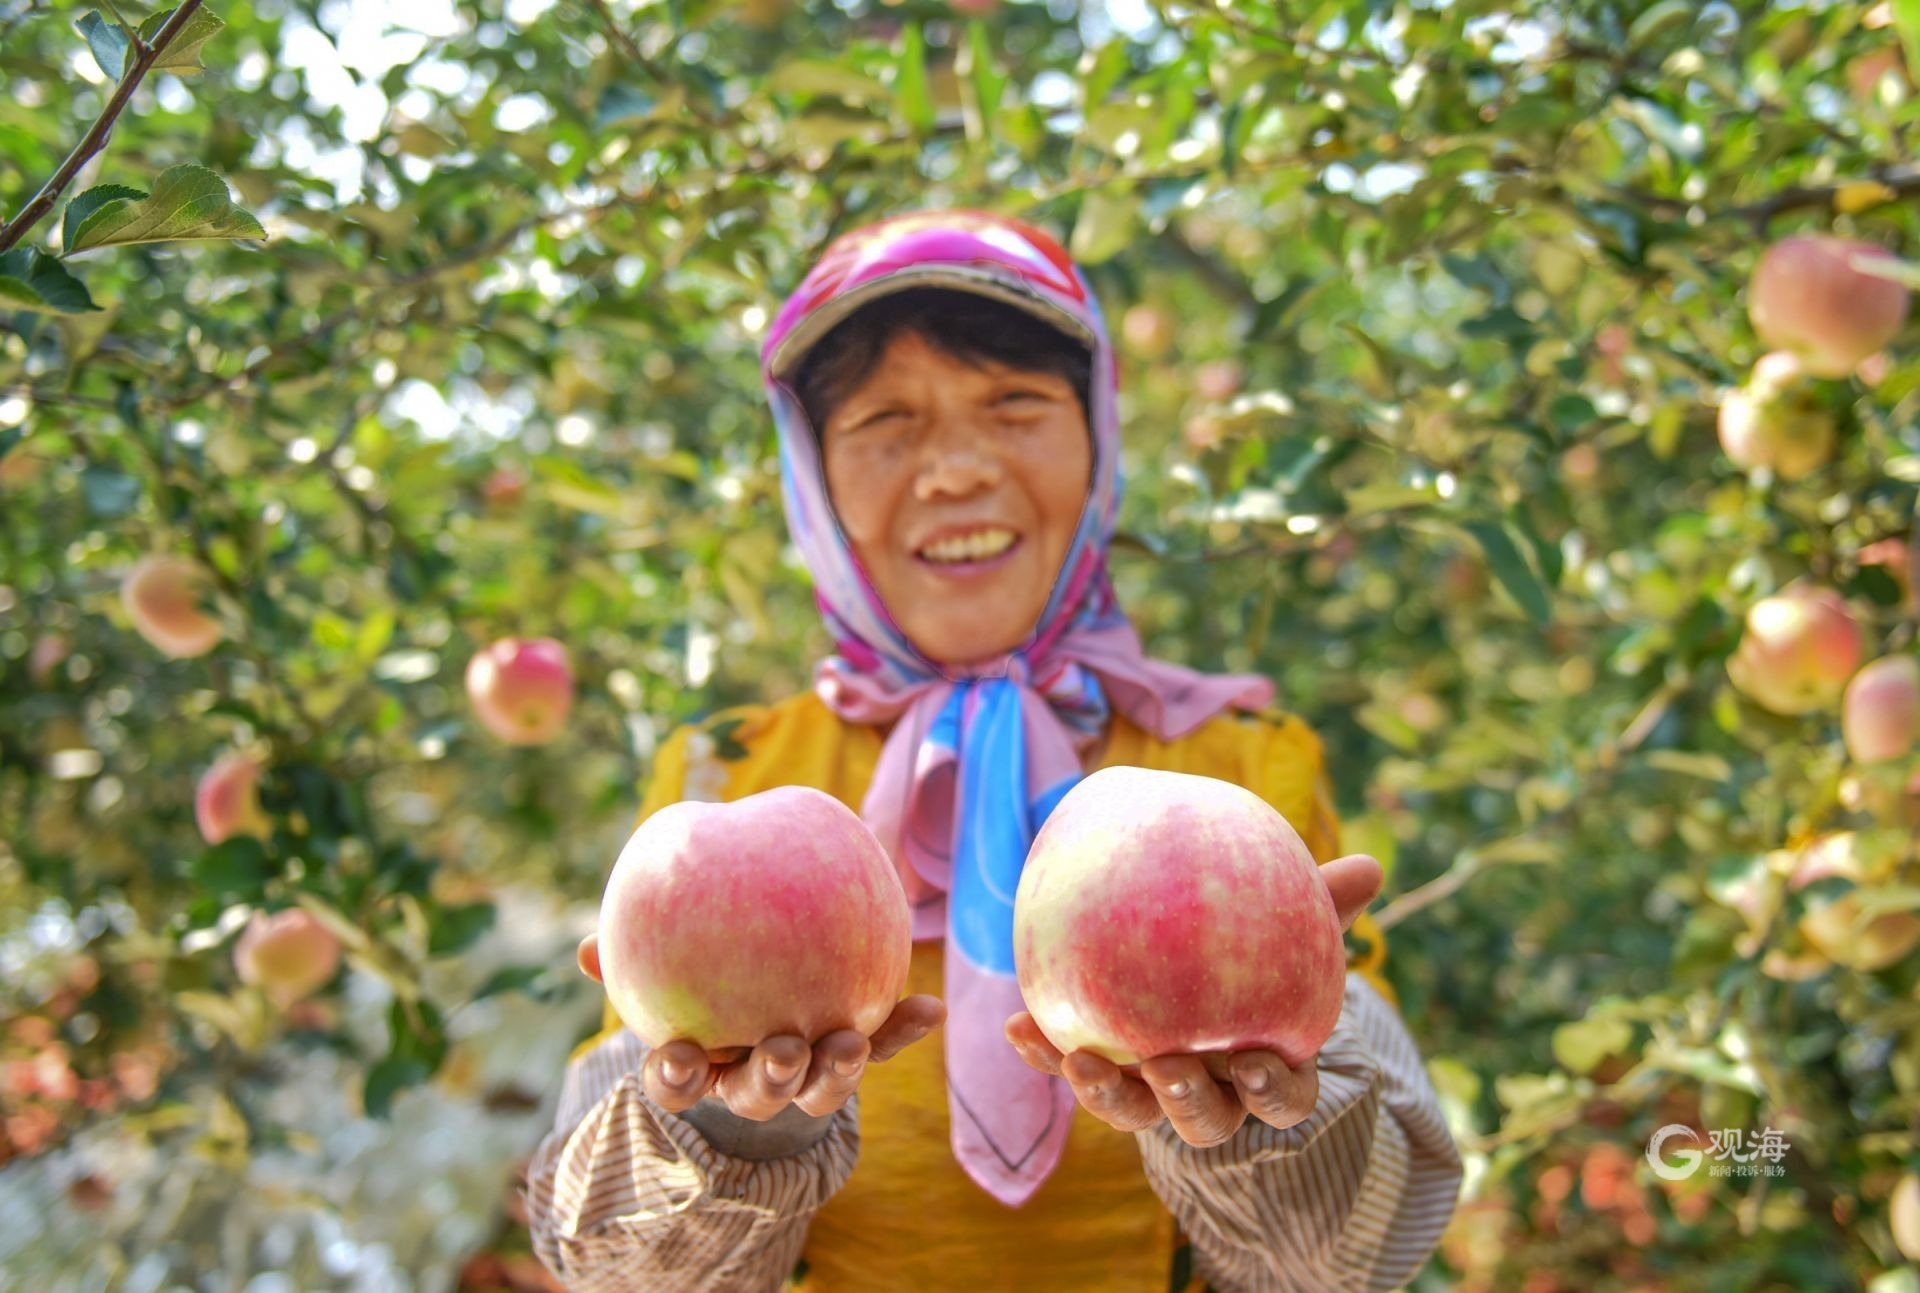 少妇采摘苹果在庭院里 库存照片. 图片 包括有 果子, 申请人, 新鲜, 集合, 人们, 欧洲, 收获, 农夫 - 59995564